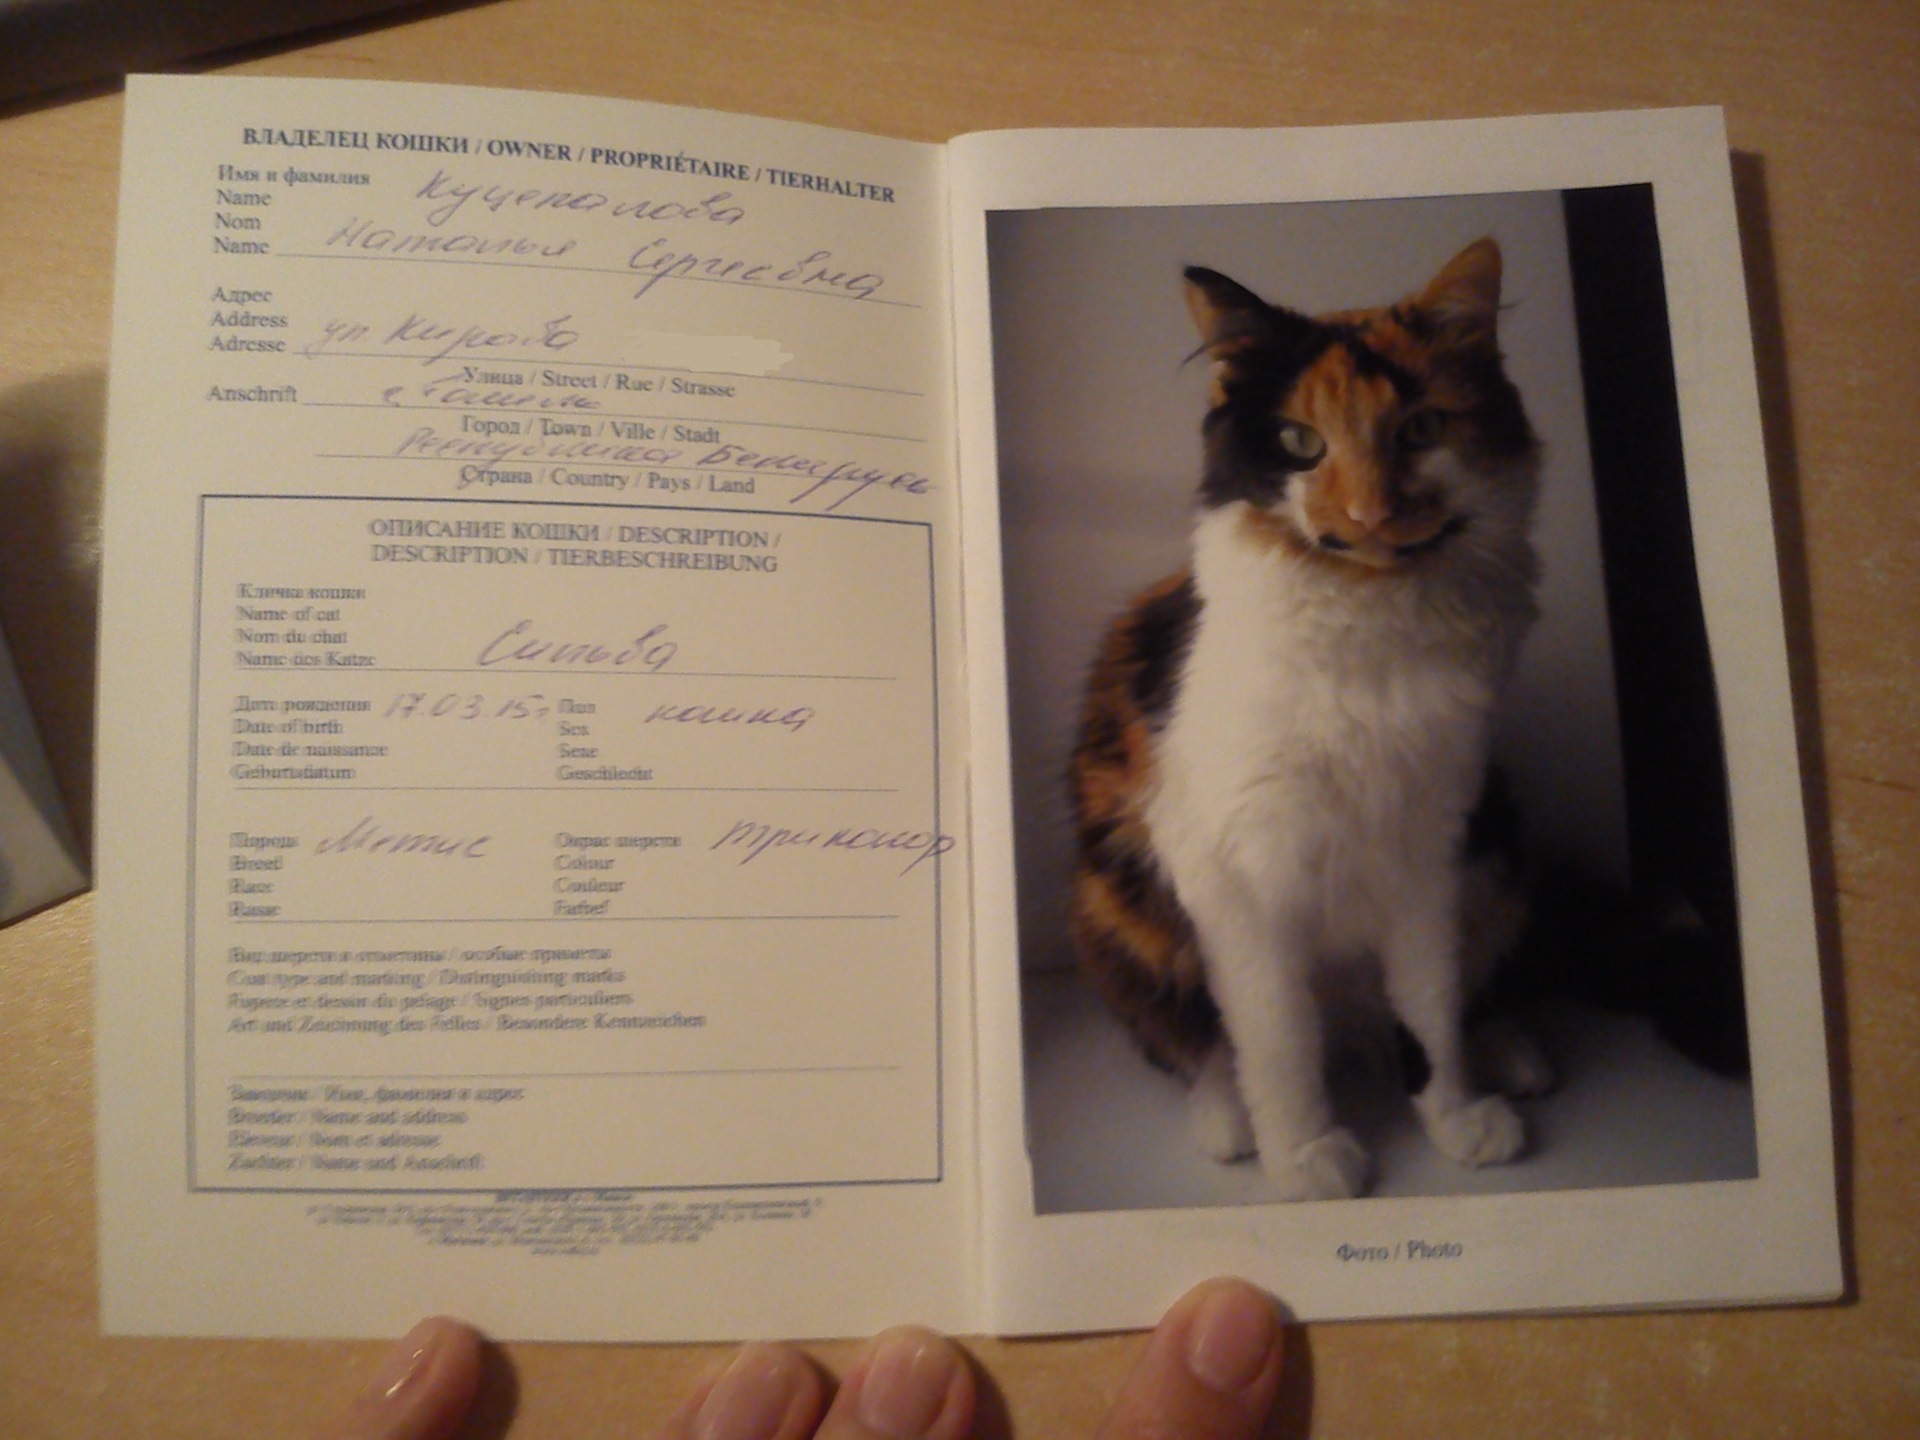 Фото на ветеринарный паспорт размер